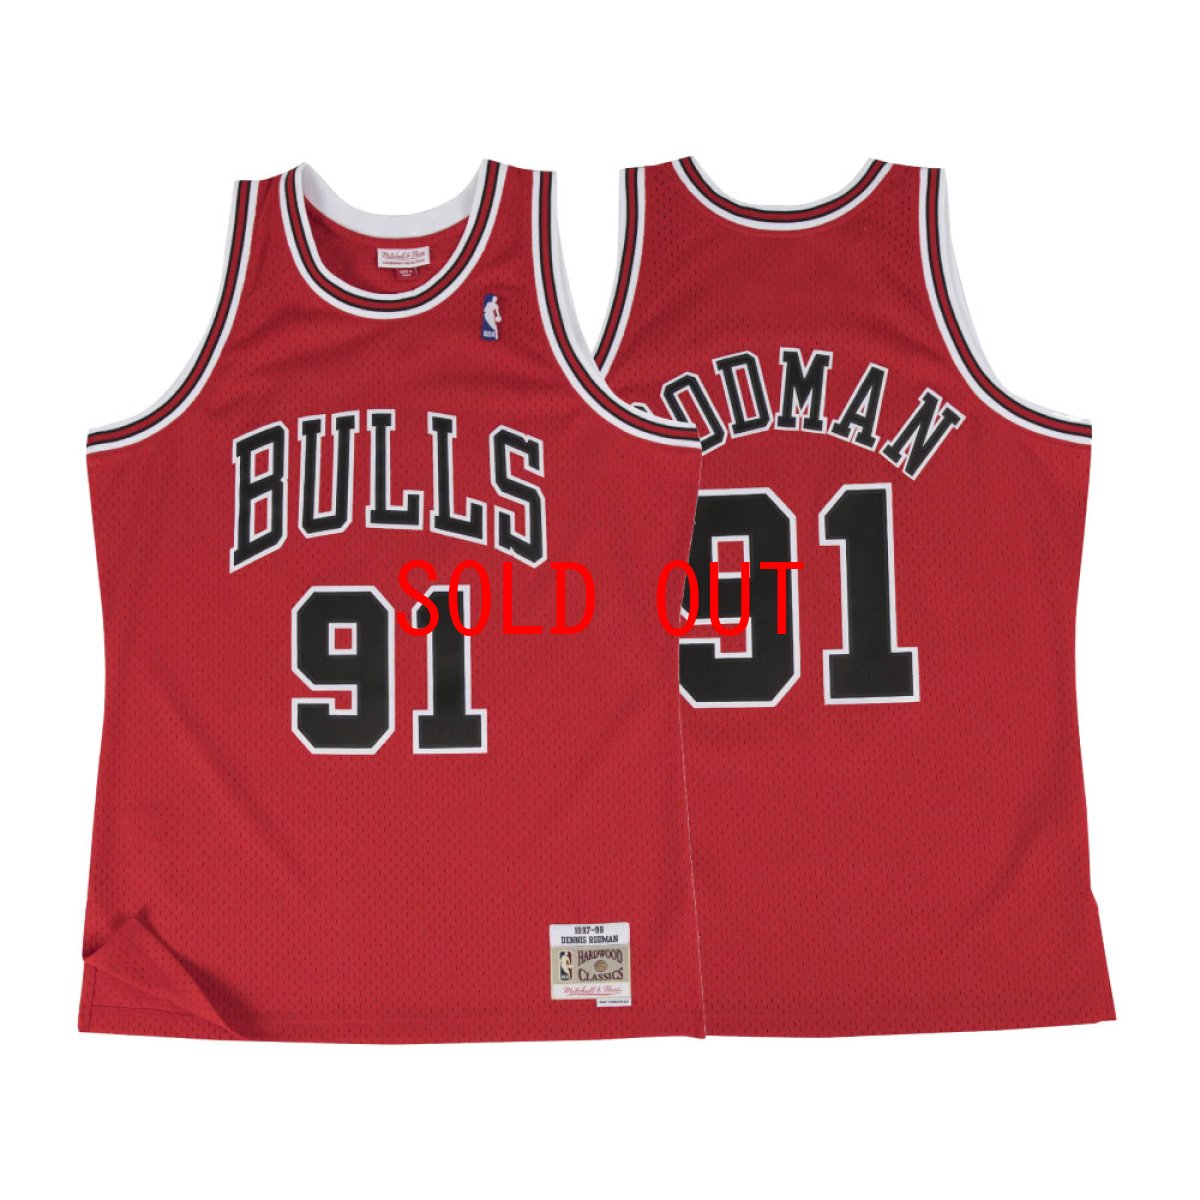 画像1: Chicago Bulls NBA Swingman Home Jersey Rodman 97 シカゴ ブルズ ロッドマン バスケットボール ゲーム シャツ (1)